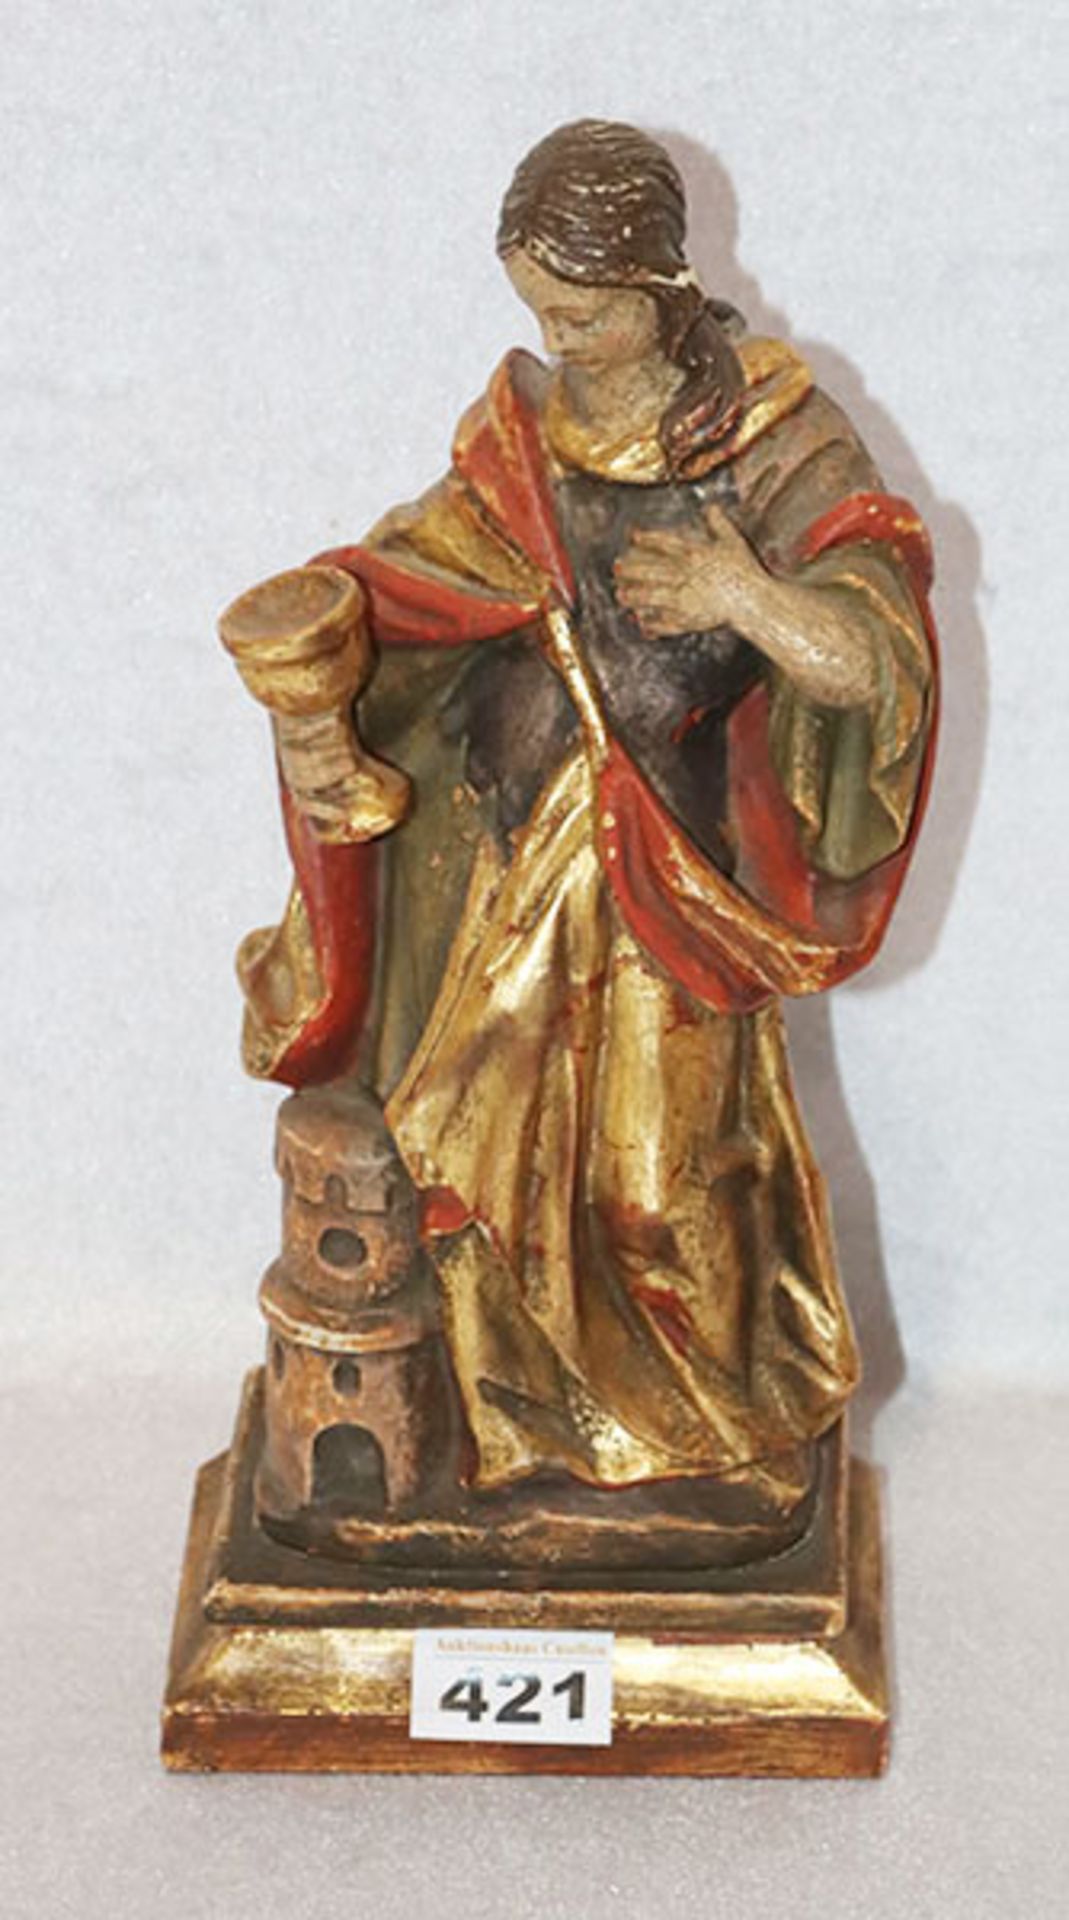 Holzfigur 'Heilige Barbara', farbig gefaßt, H 31 cm, teils bestossen, Farbablösungen